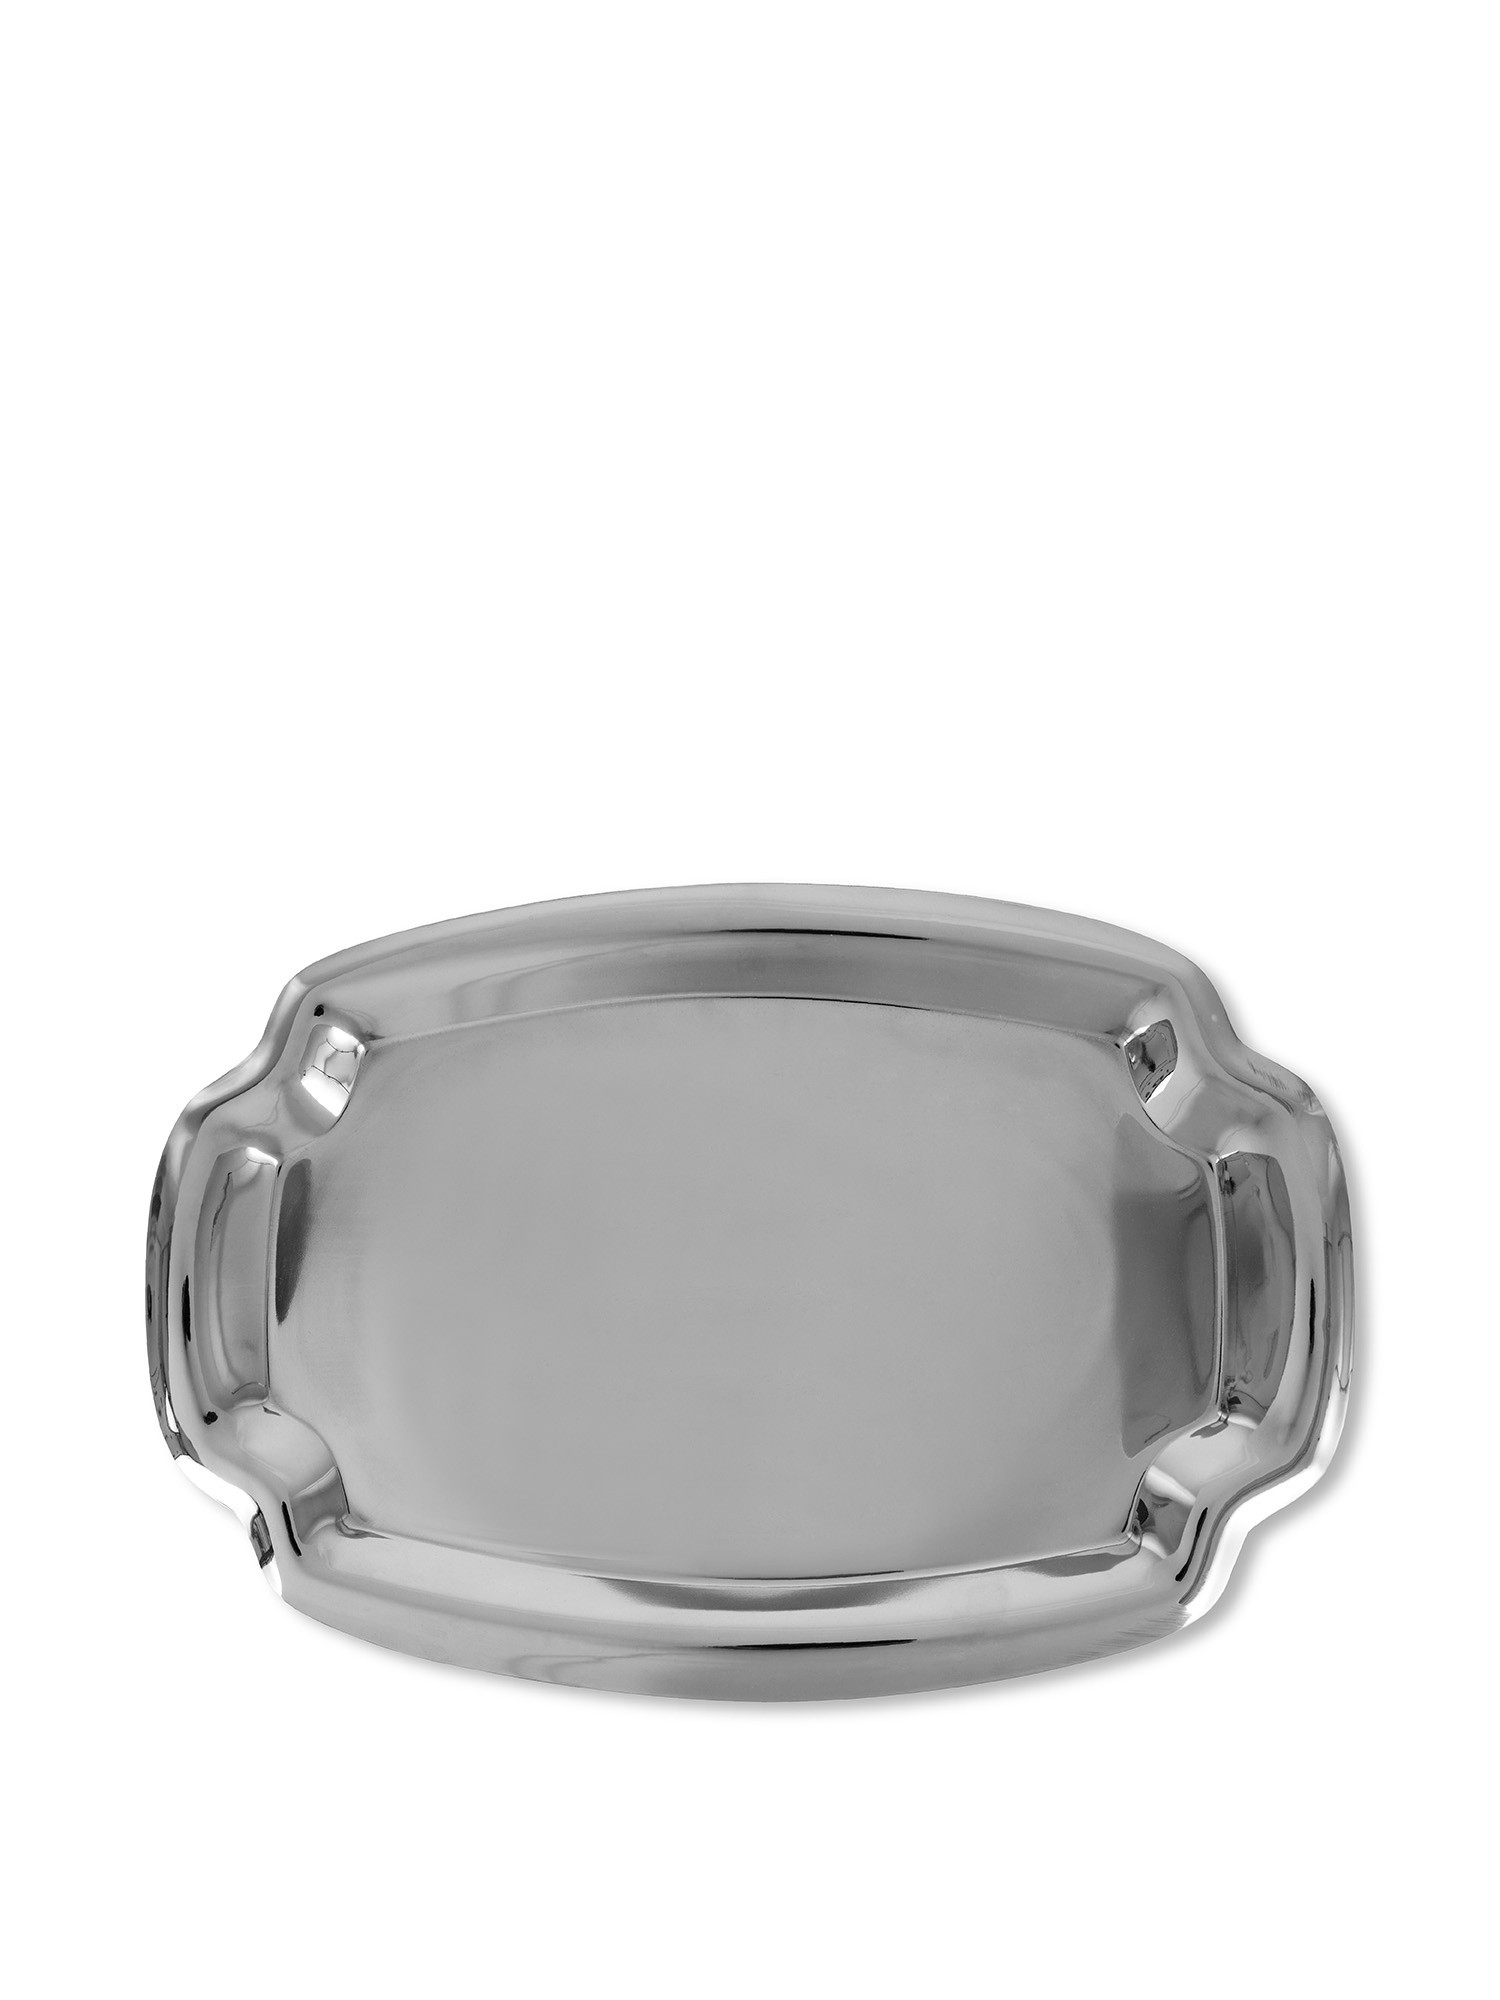 Vassoio rettangolare in acciaio, Grigio argento, large image number 0